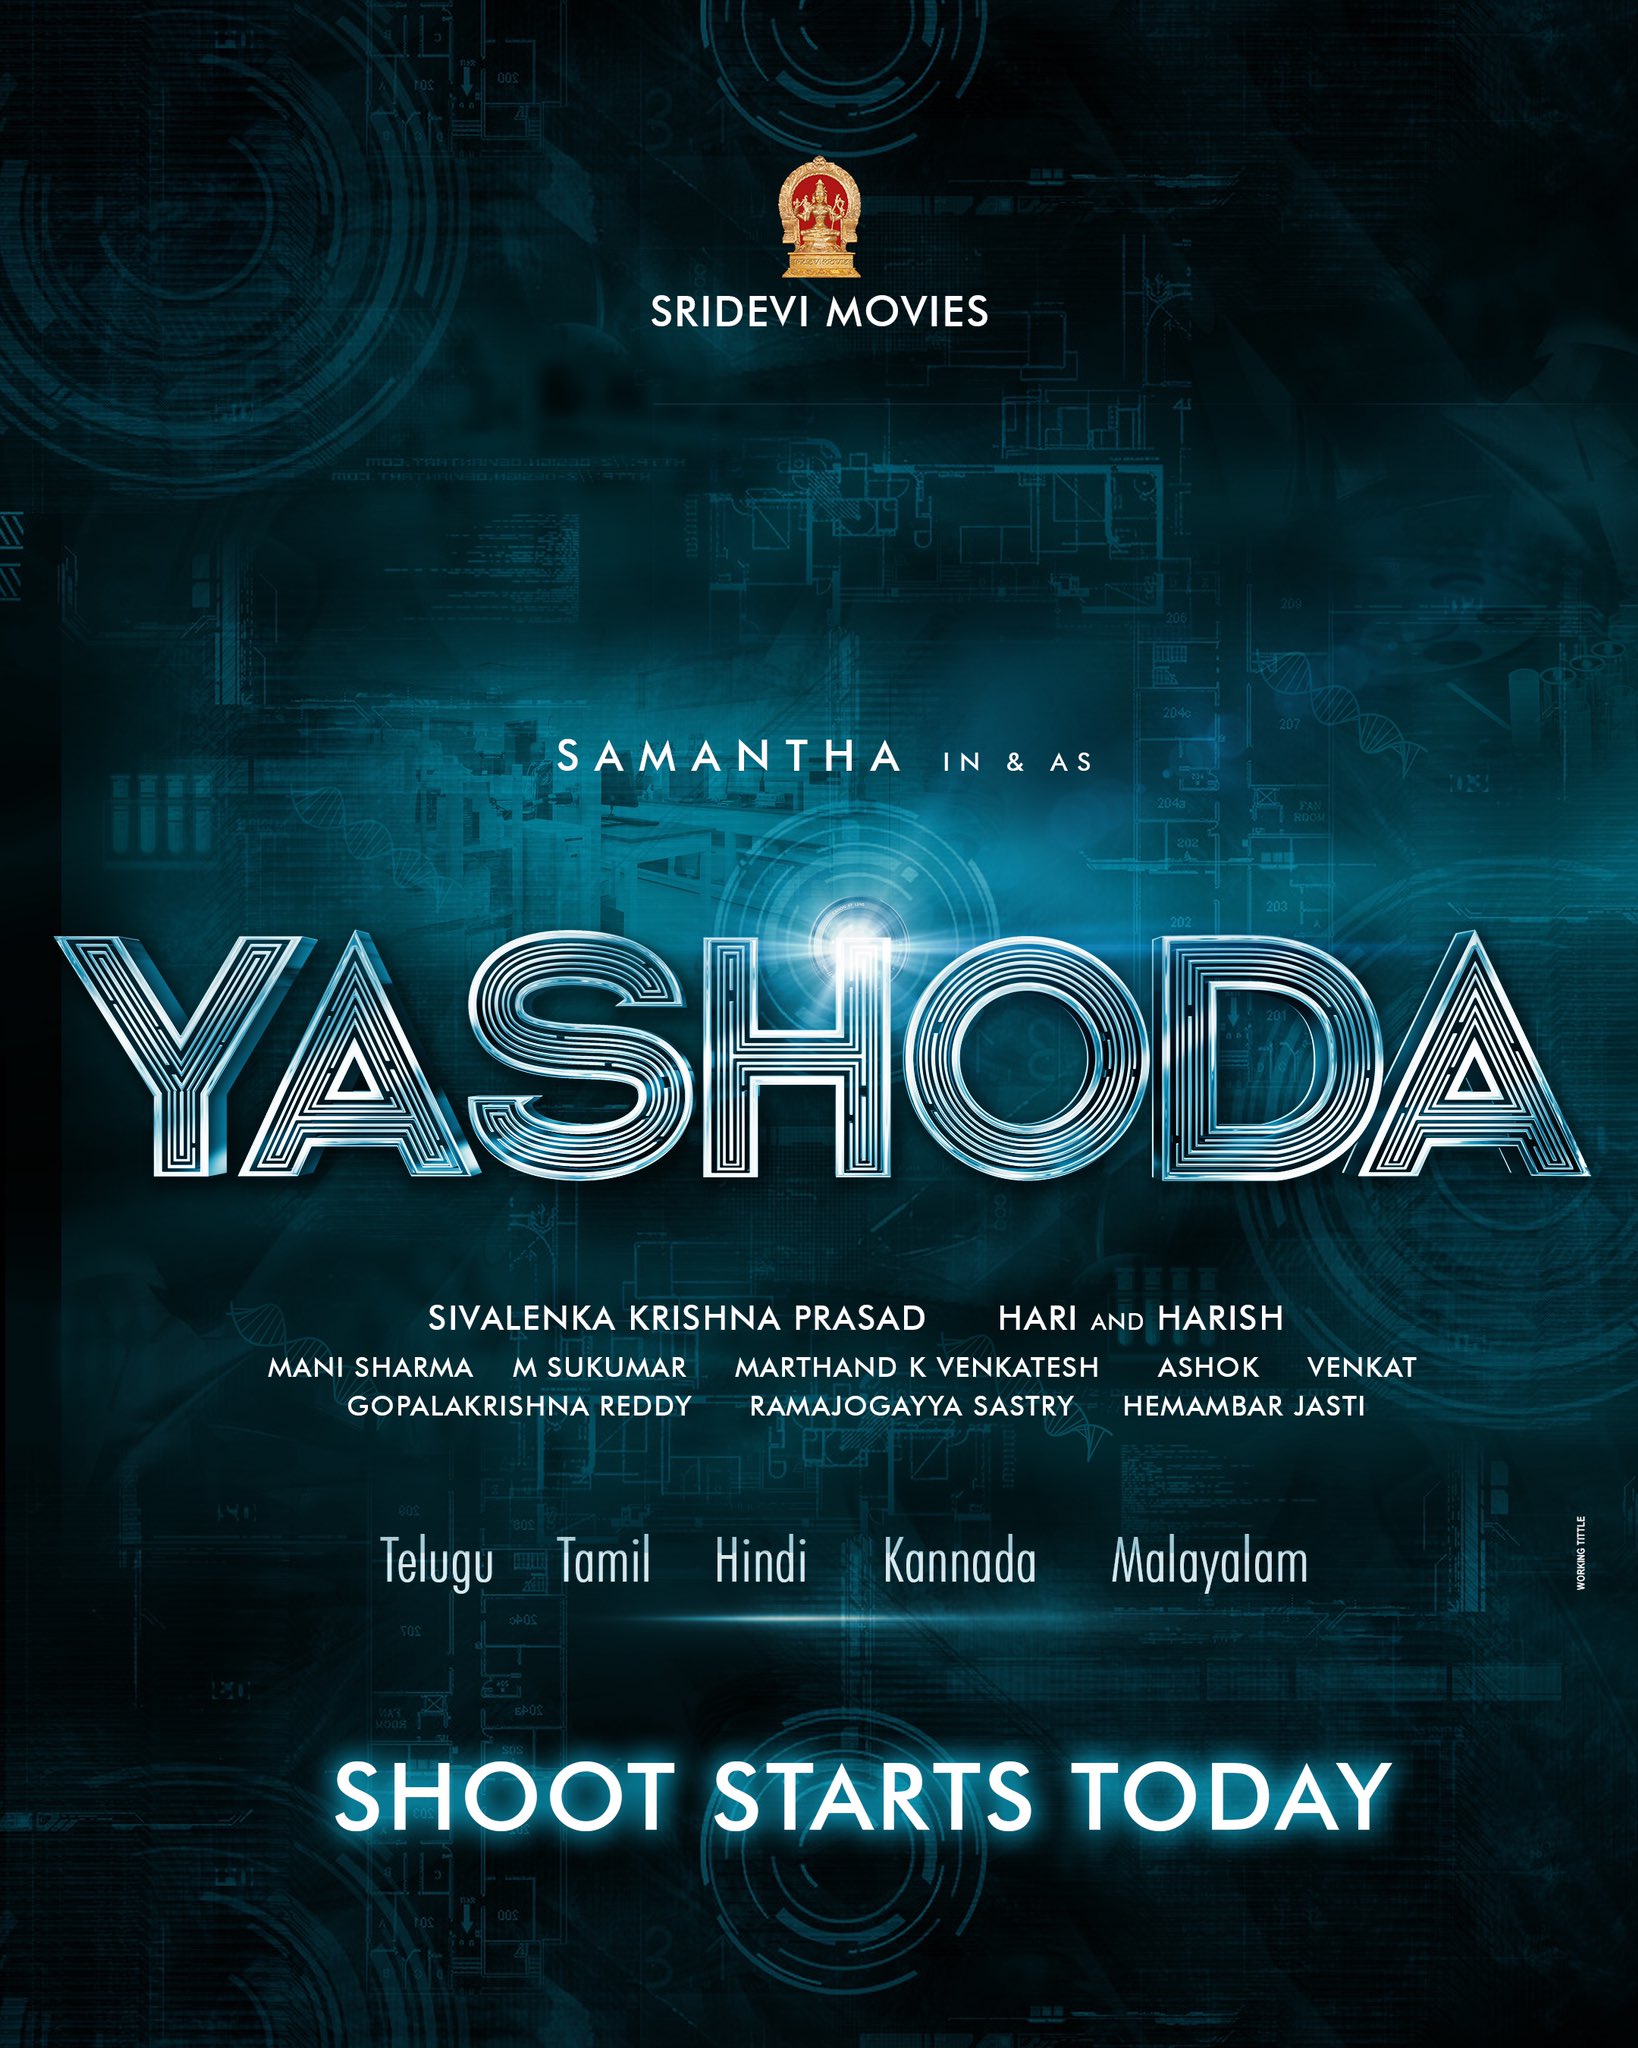 samantha yashoda movie